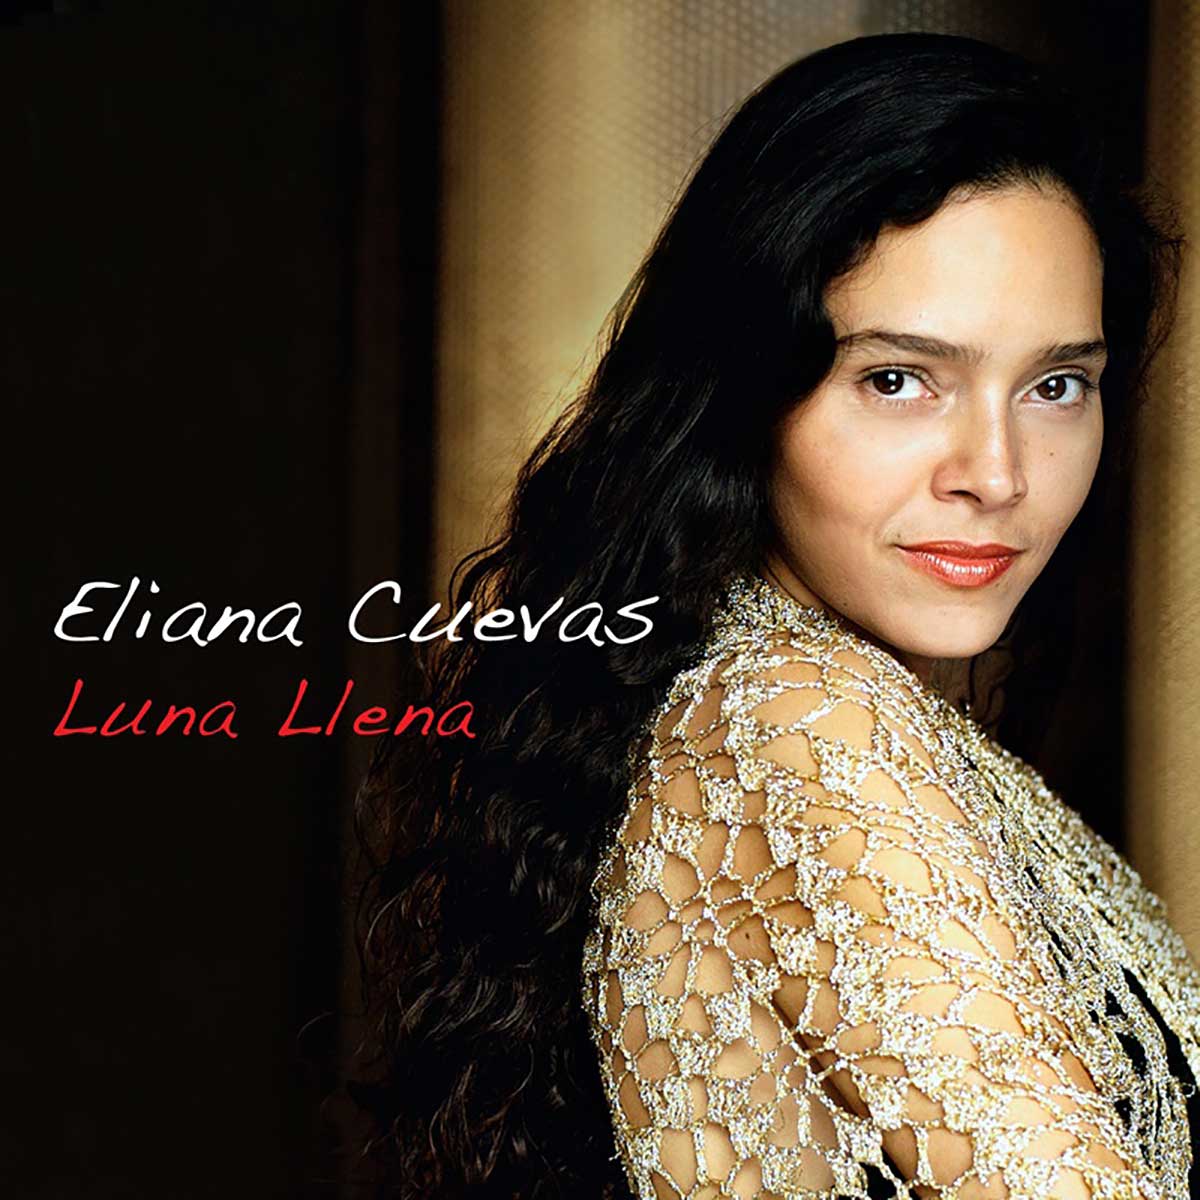 Eliana Cuevas Luna Llena